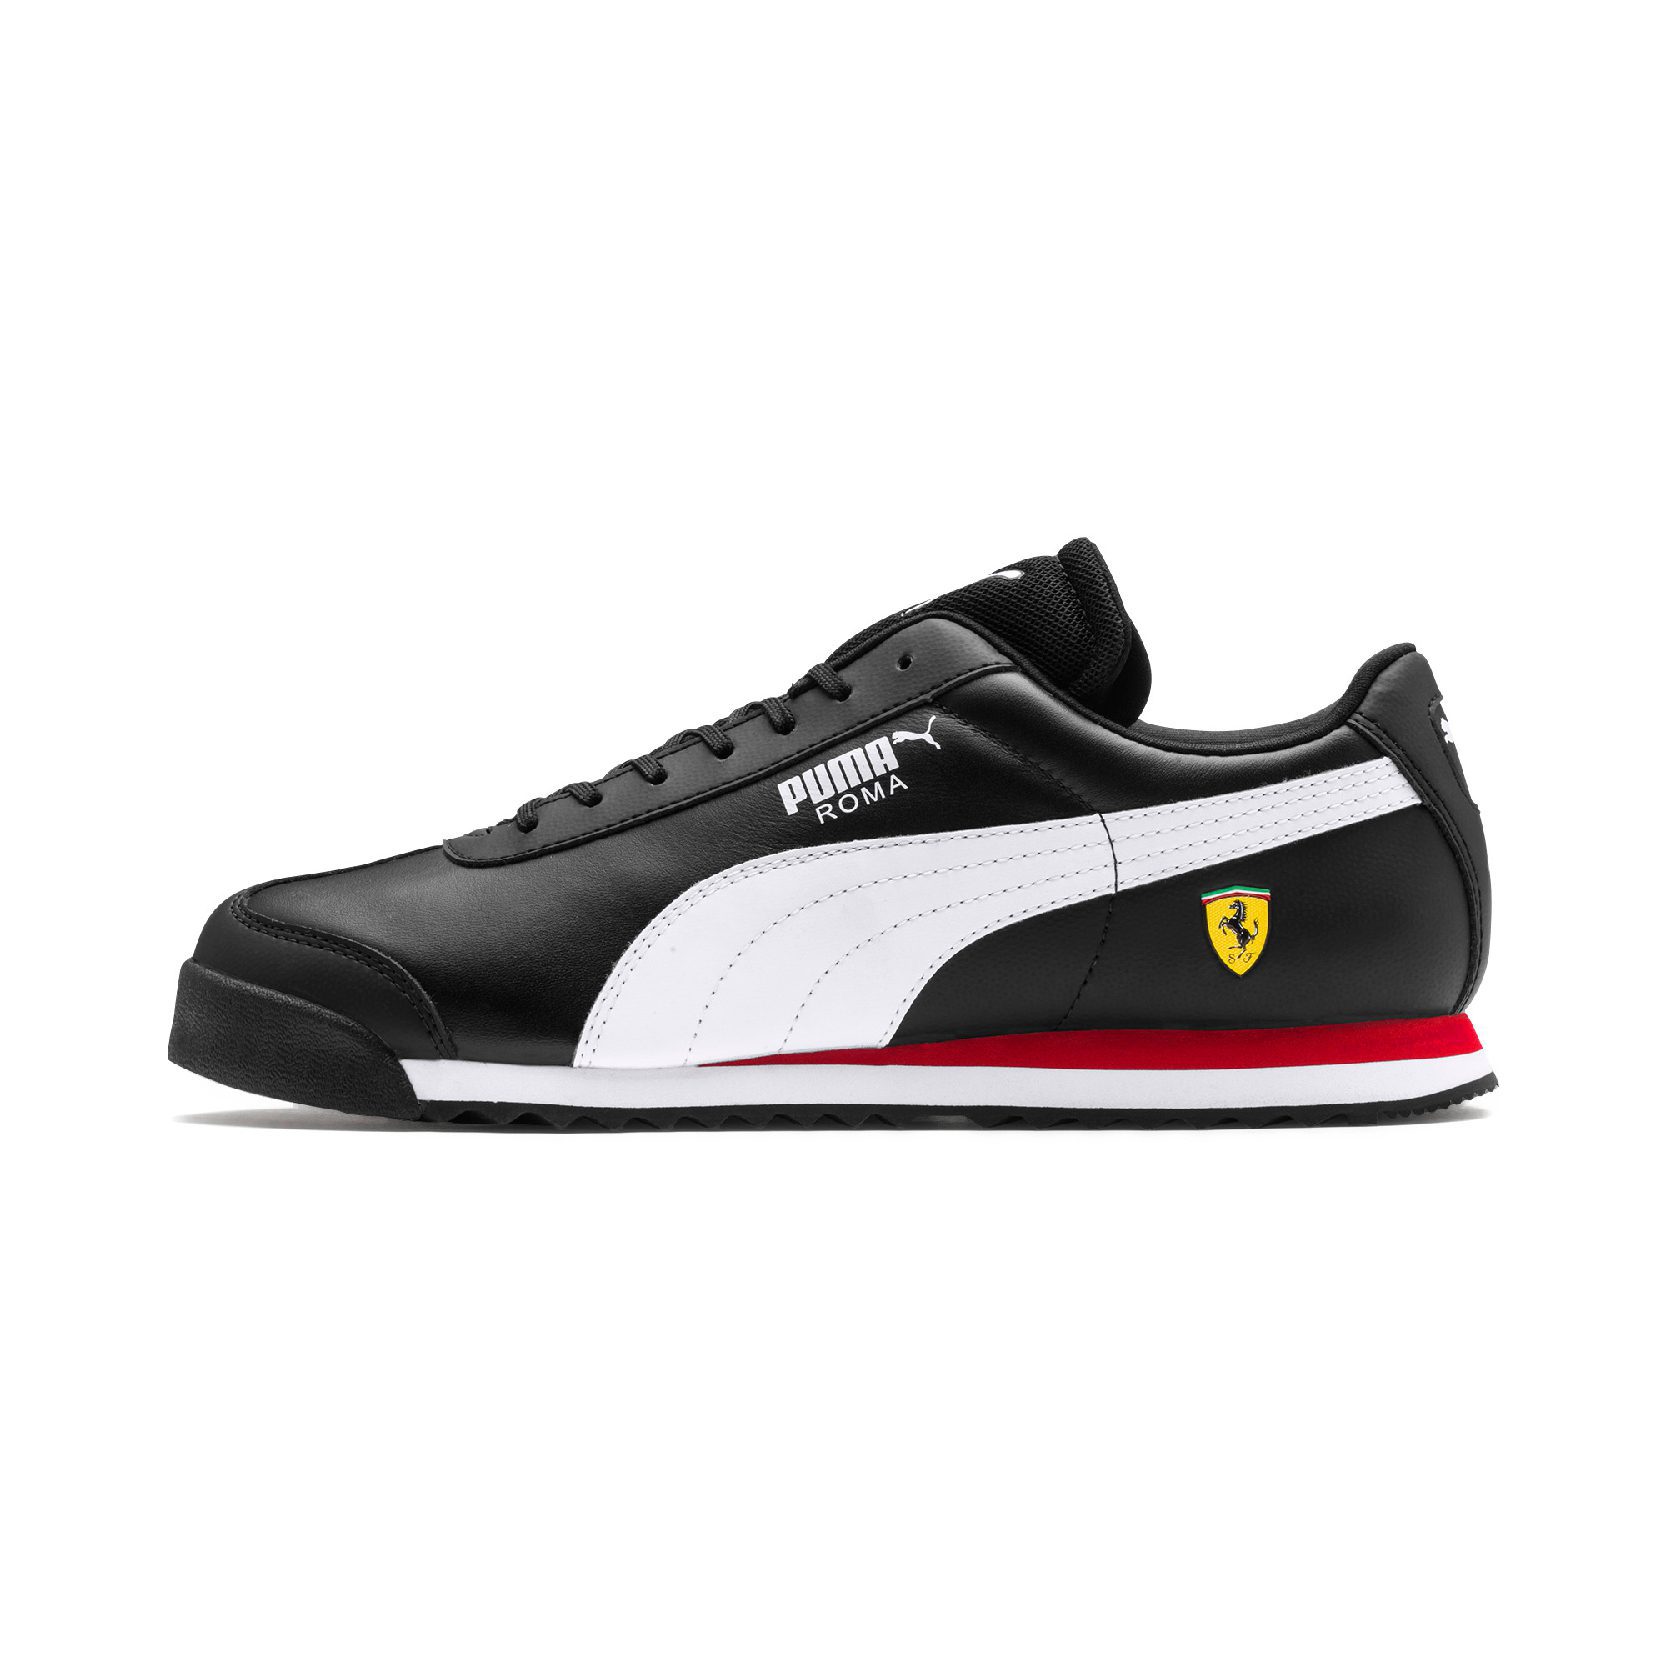 Puma Men's Scuderia Ferrari Roma Black/White/Rosso Corsa Sneakers ...